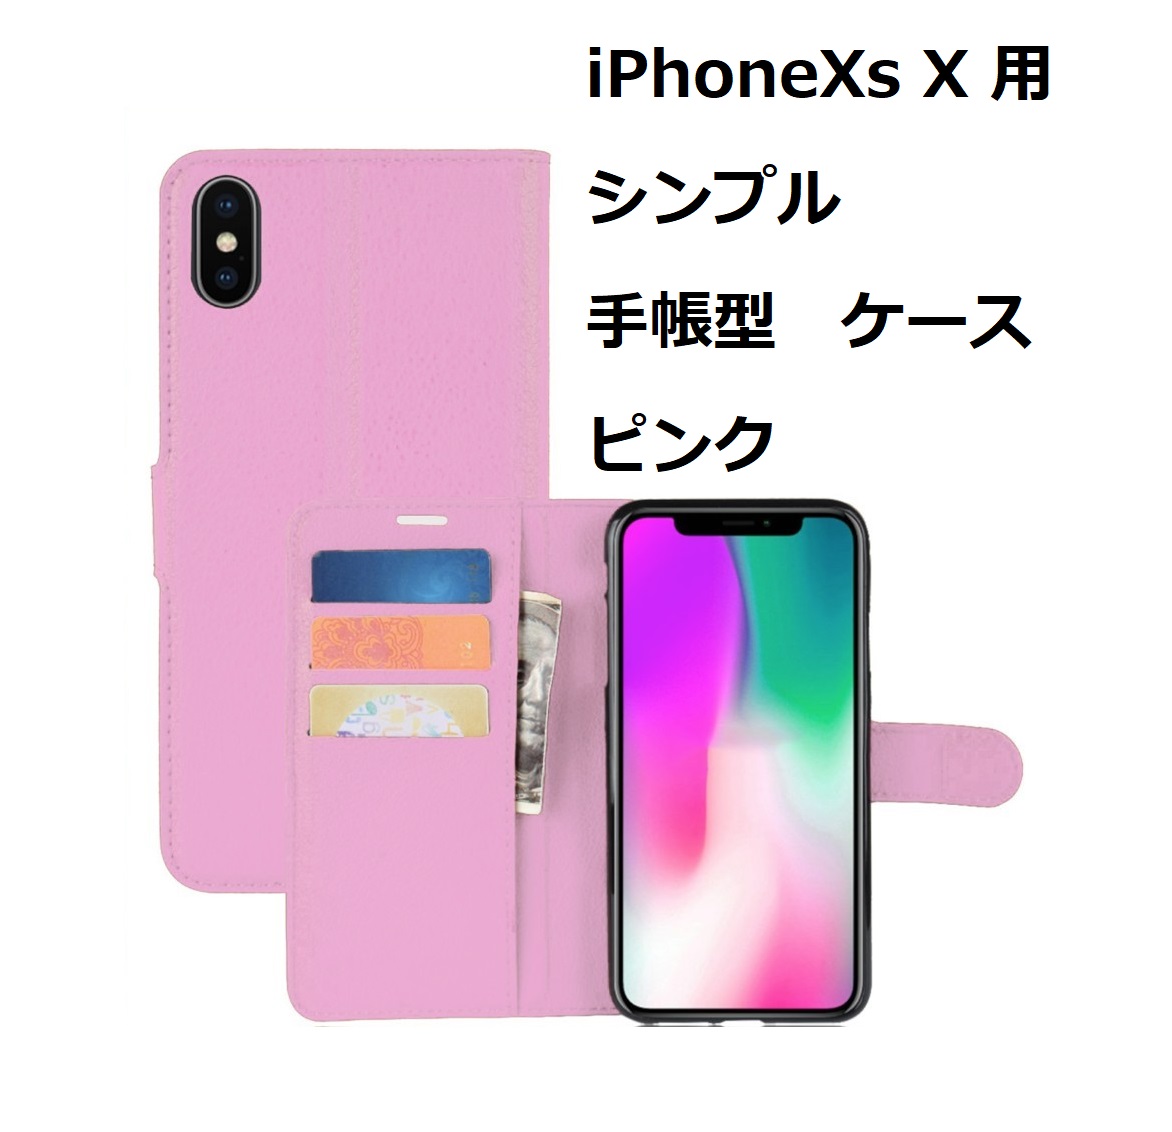 【送料無料】この商品はゆうパケット発送で送料無料です。 iPhoneXs iPhoneX ケース（5.8インチ）シンプル 手帳型 ケース ピンク 手触りの良い上質感PUレザー スリムデザイン カードポケット スタンド機能